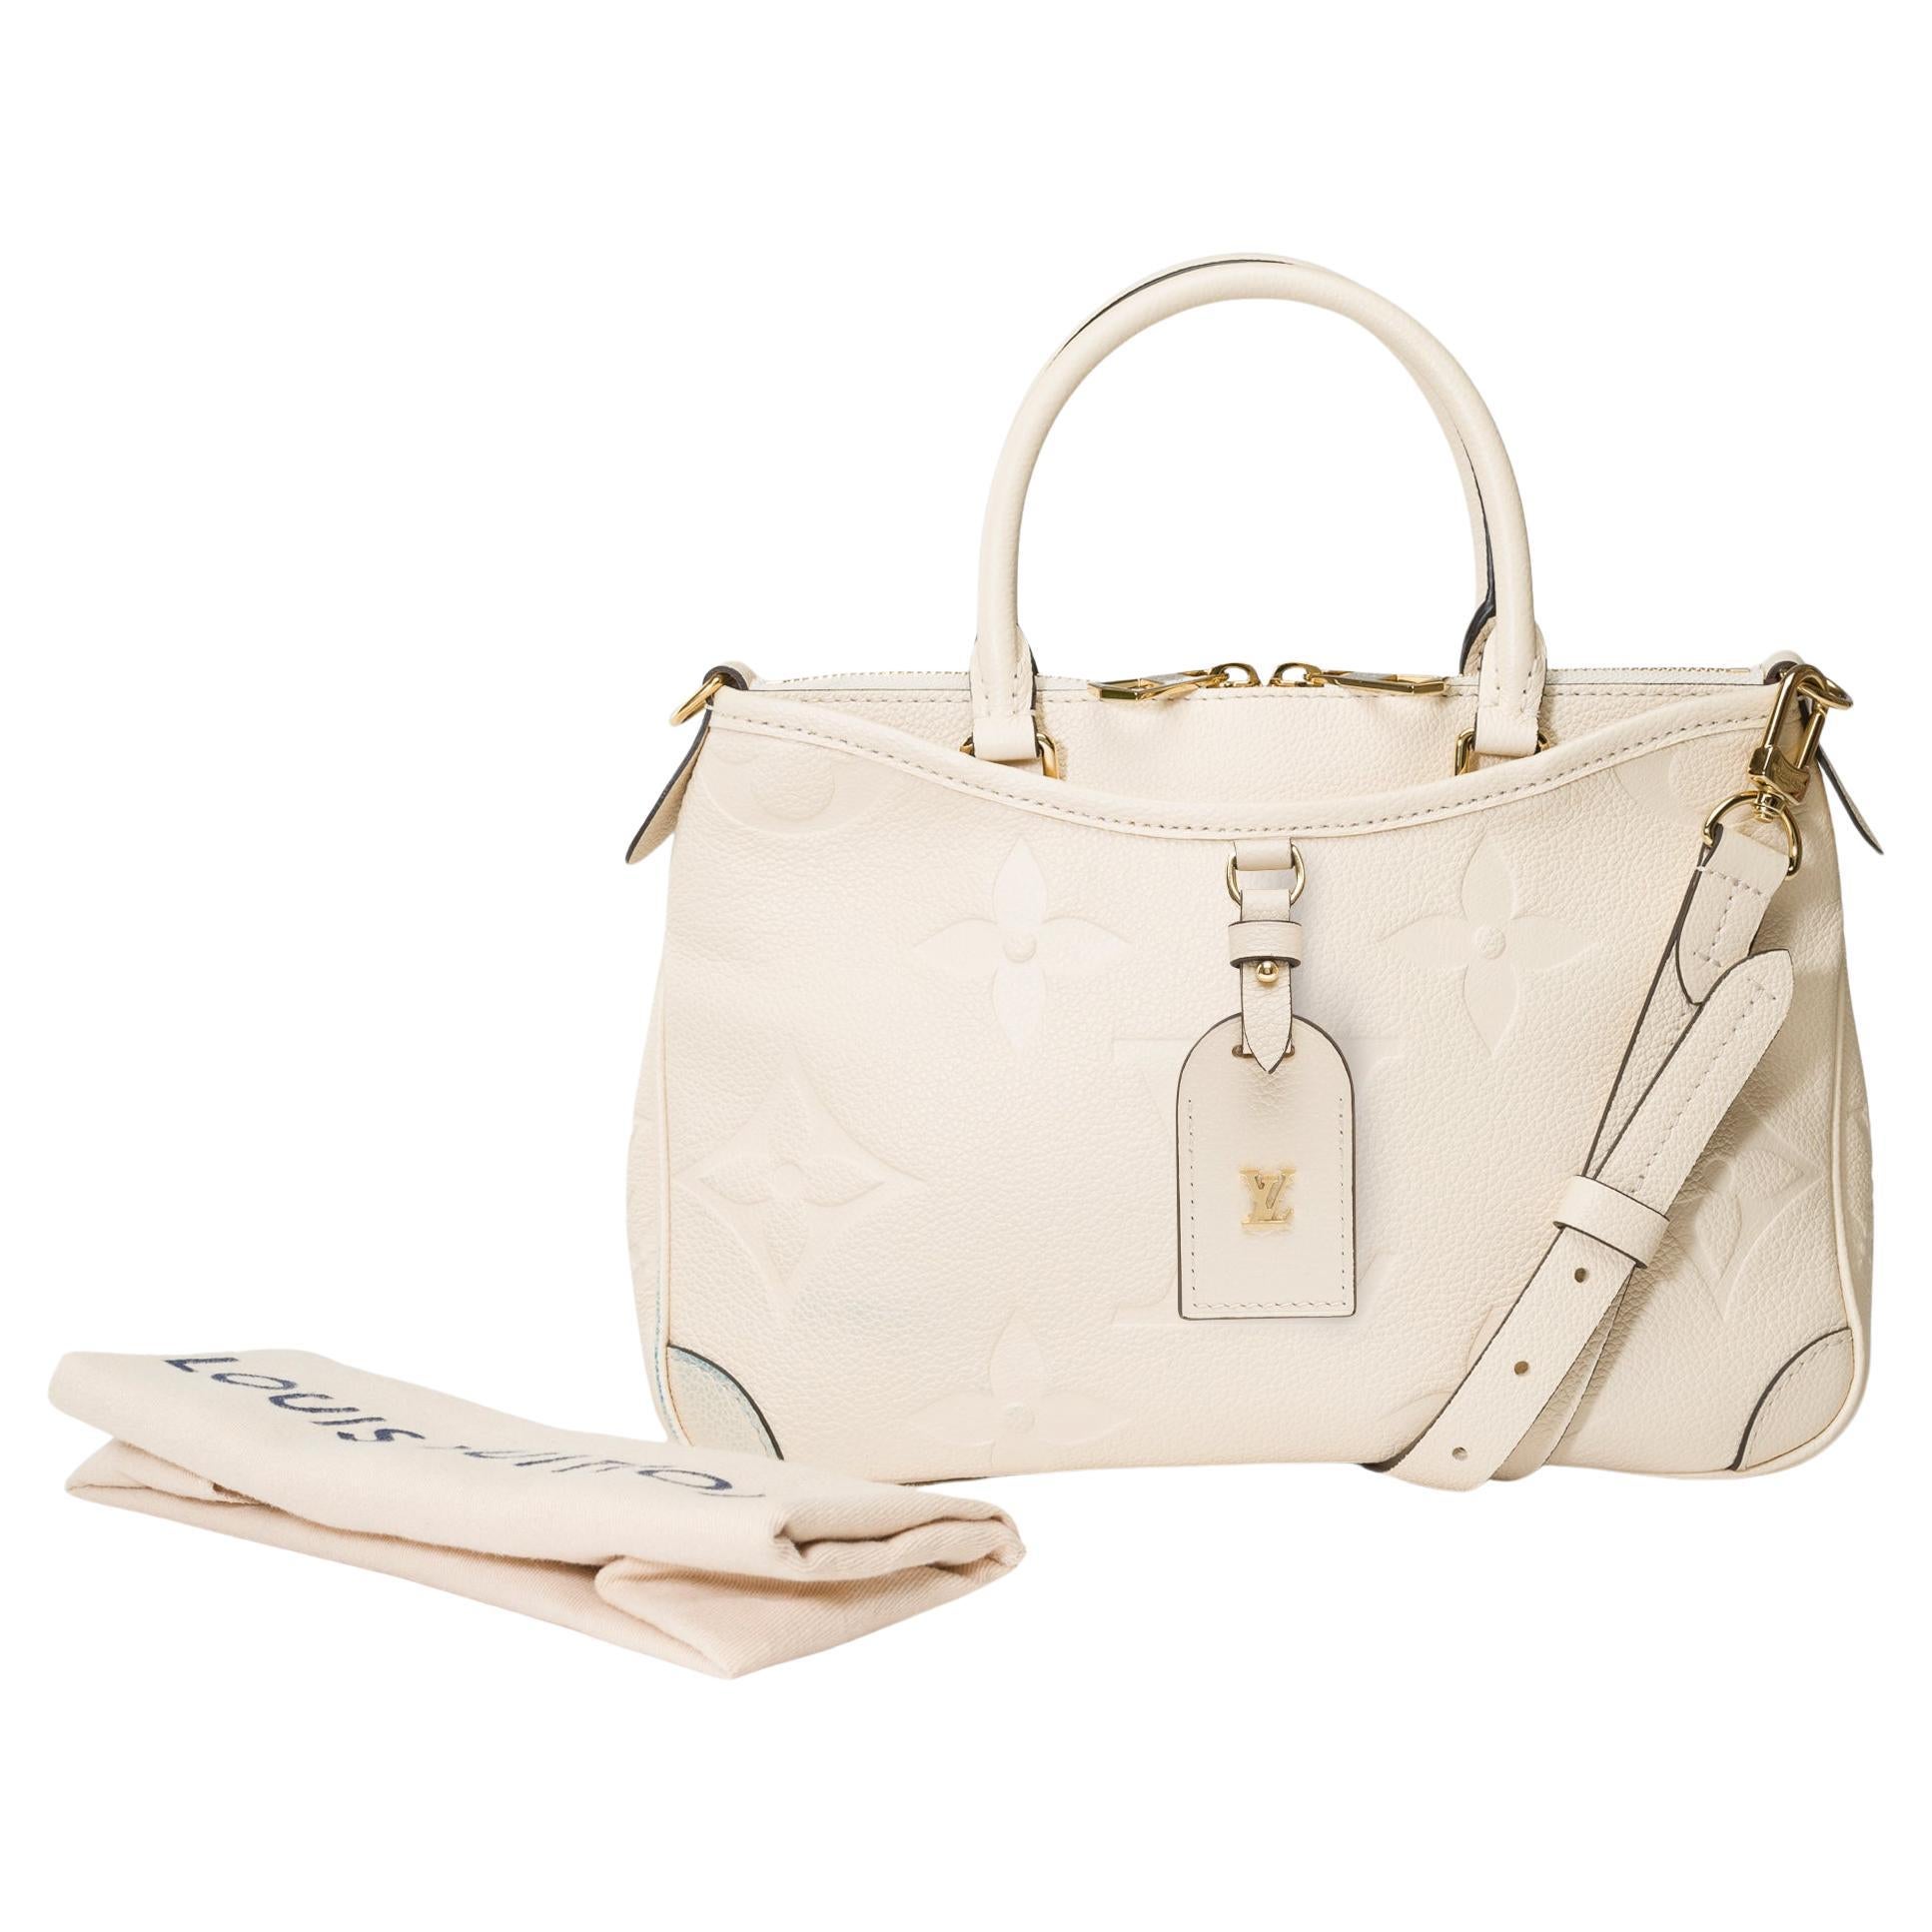 Louis Vuitton Trianon PM handbag strap in Cream White monogram calf leather, GHW For Sale